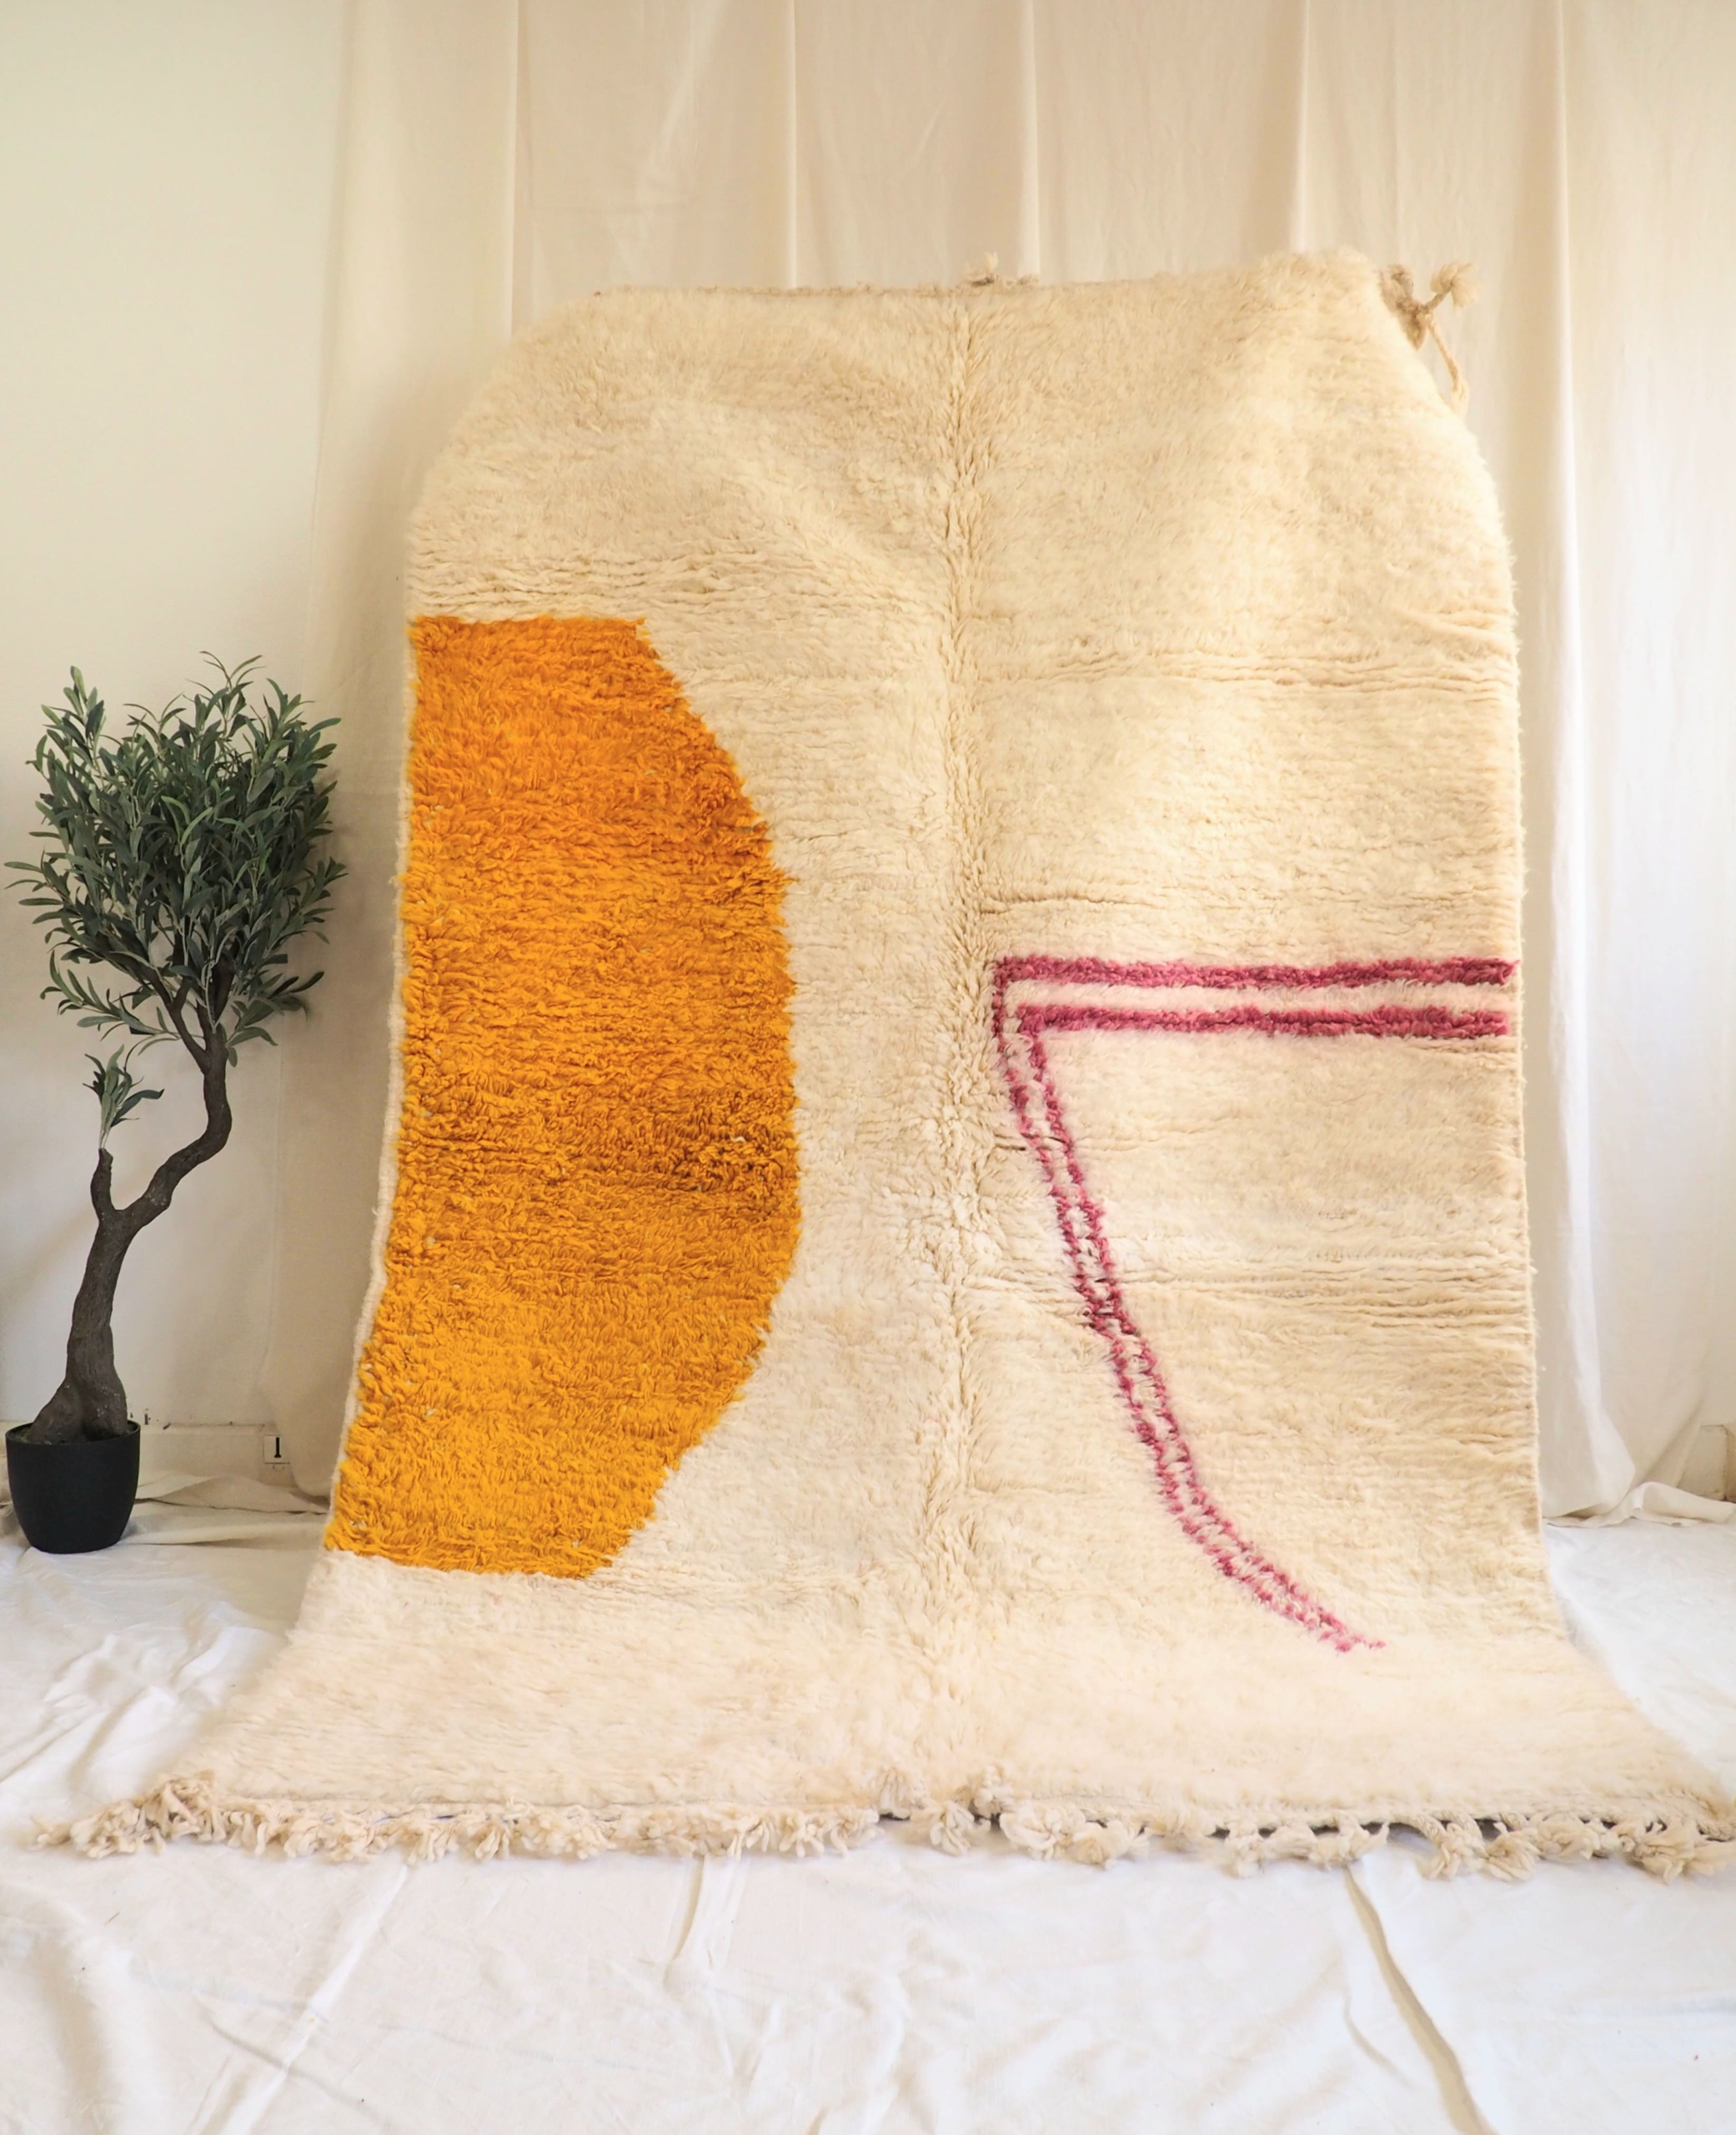 Authentique tapis Berbère en pure laine vierge de mouton fait main au Maroc motifs colorés sur fond blanc cassé